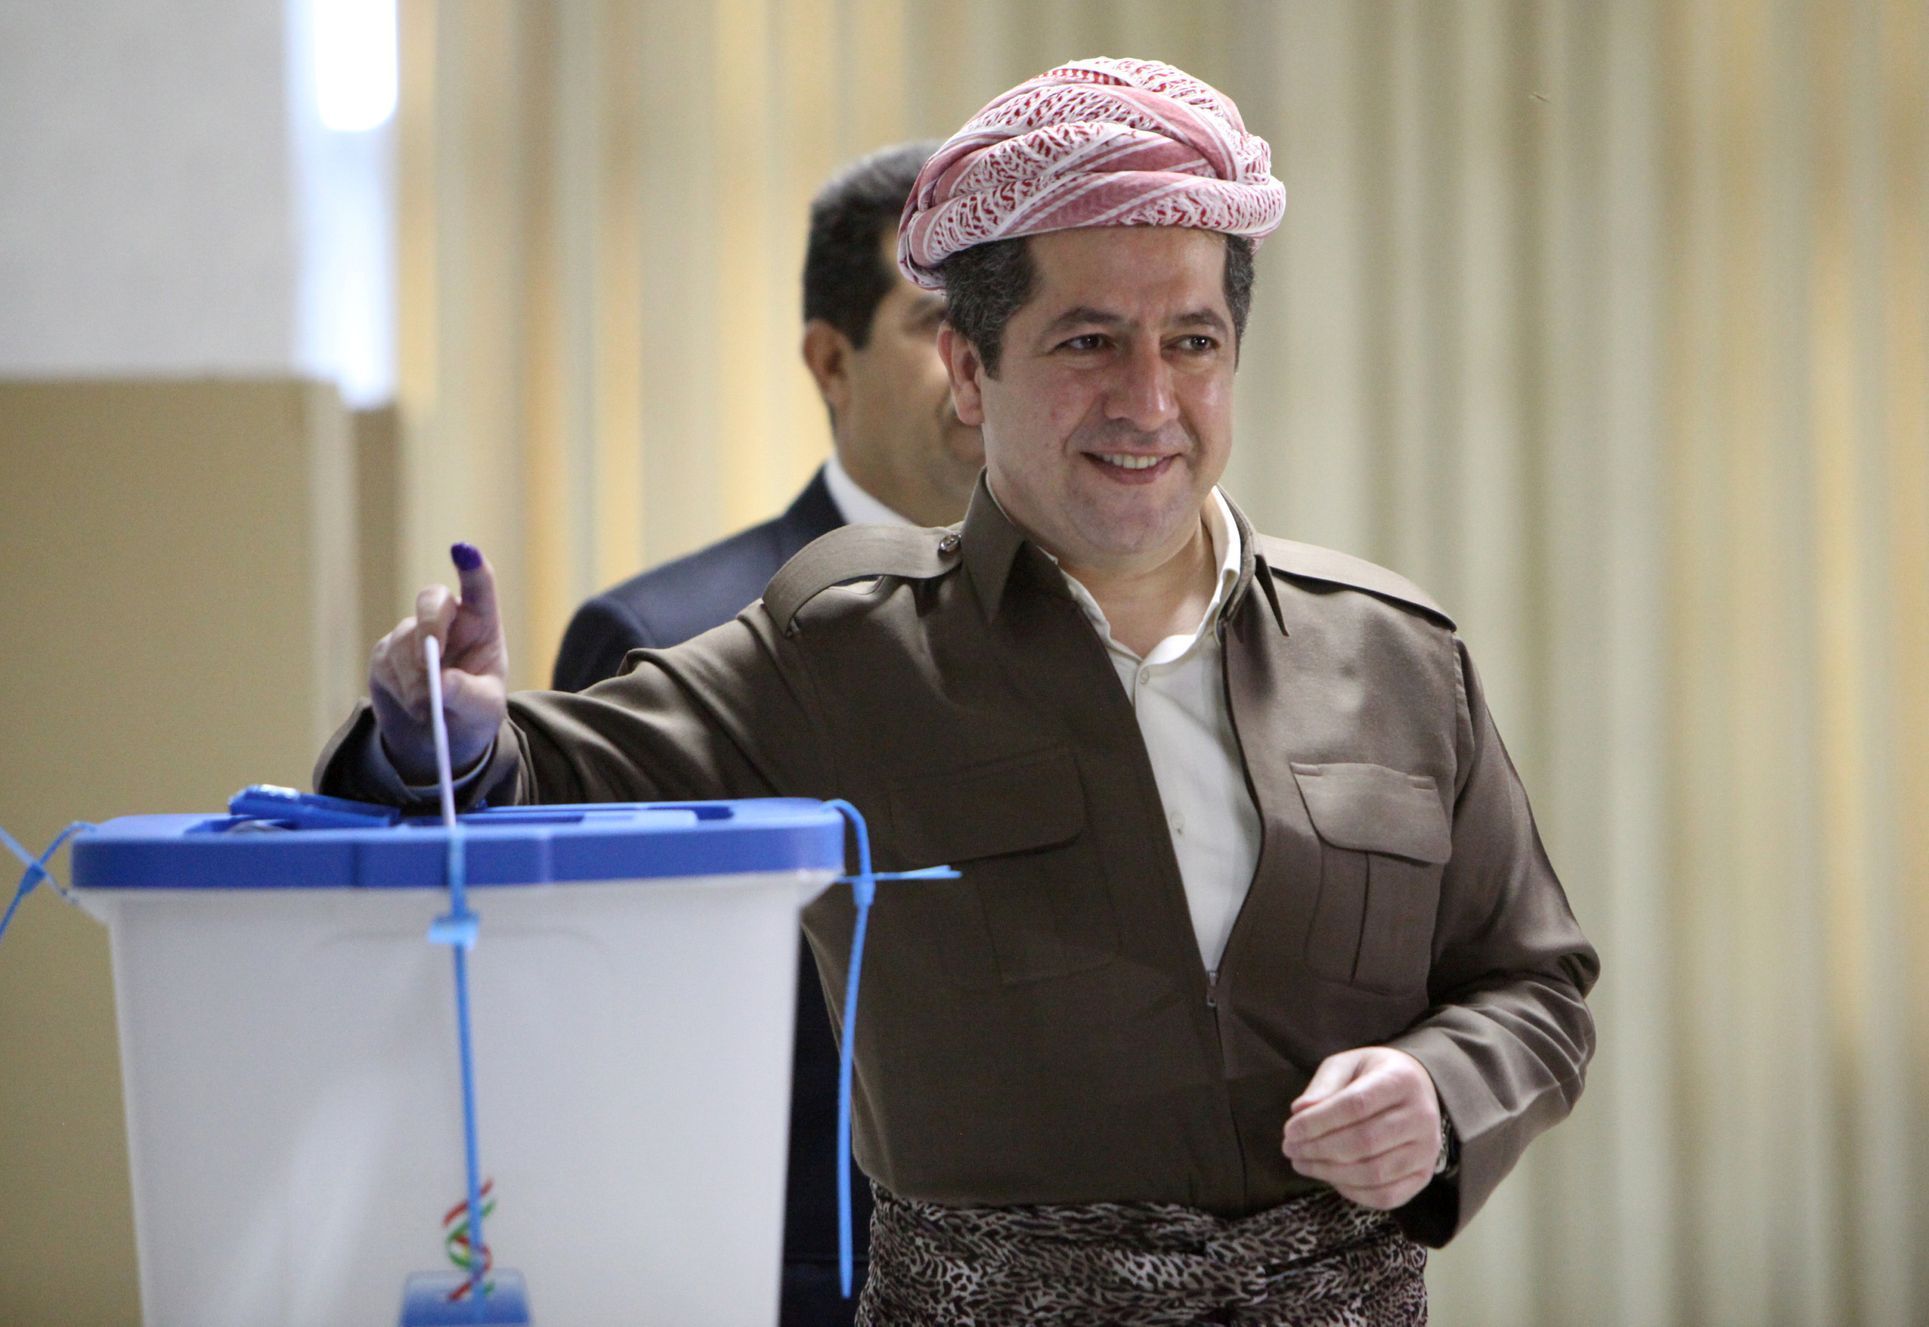 Kurdský vůdce Masúd Barzání hlasuje v referendu o nezávislosti.